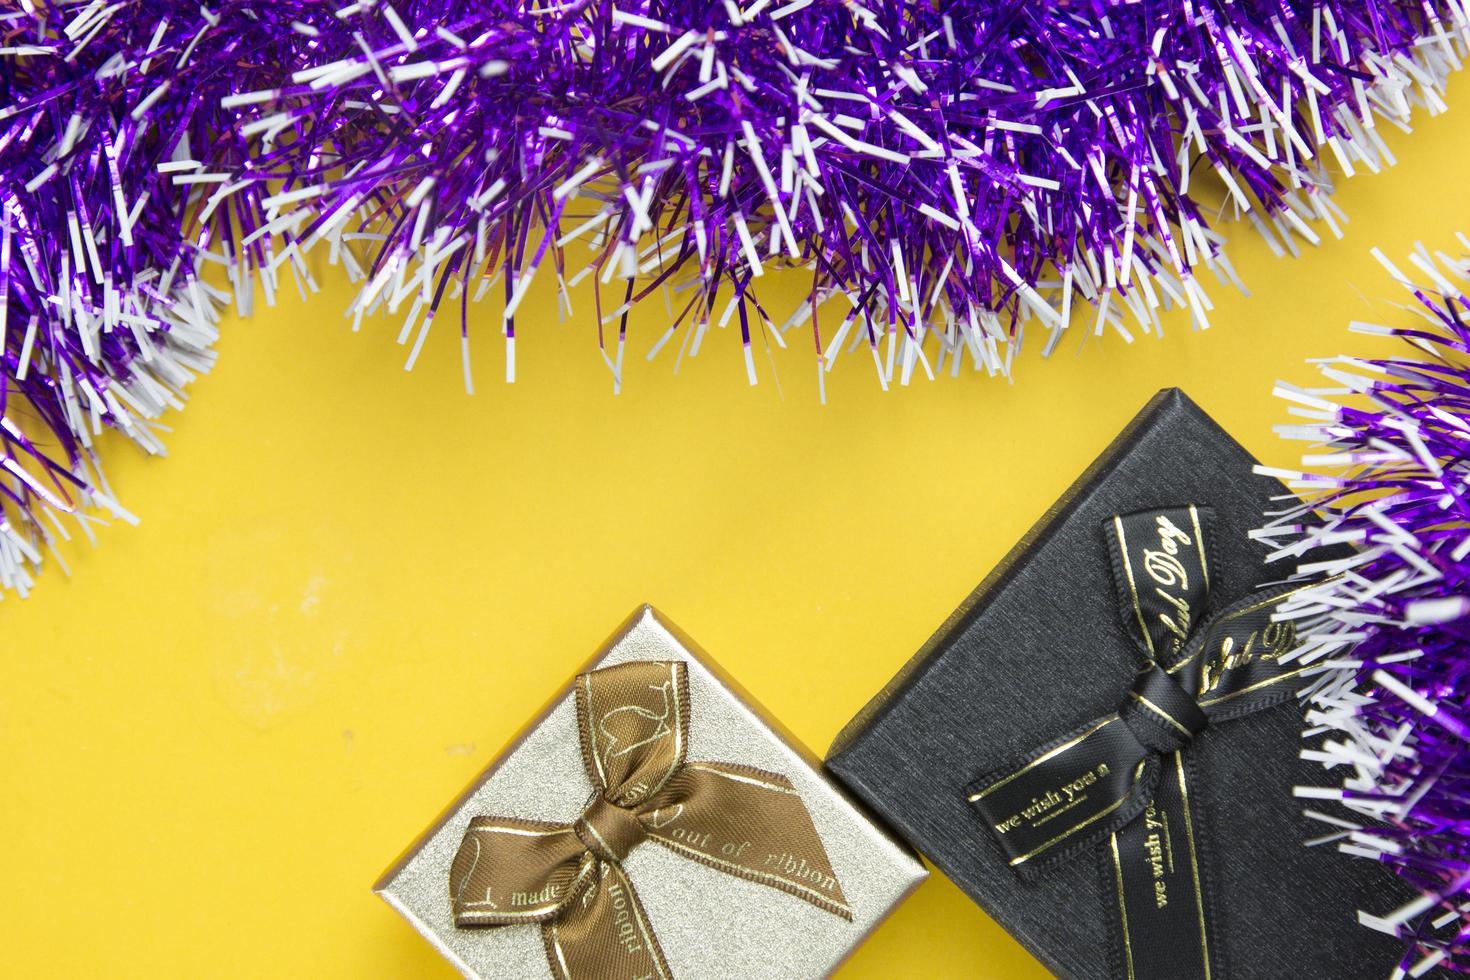 dos cajas de regalo y cintas moradas objeto festivo decorativo colocado sobre fondo amarillo, bonito diseño de conceptos de objetos decorativos de año nuevo. foto